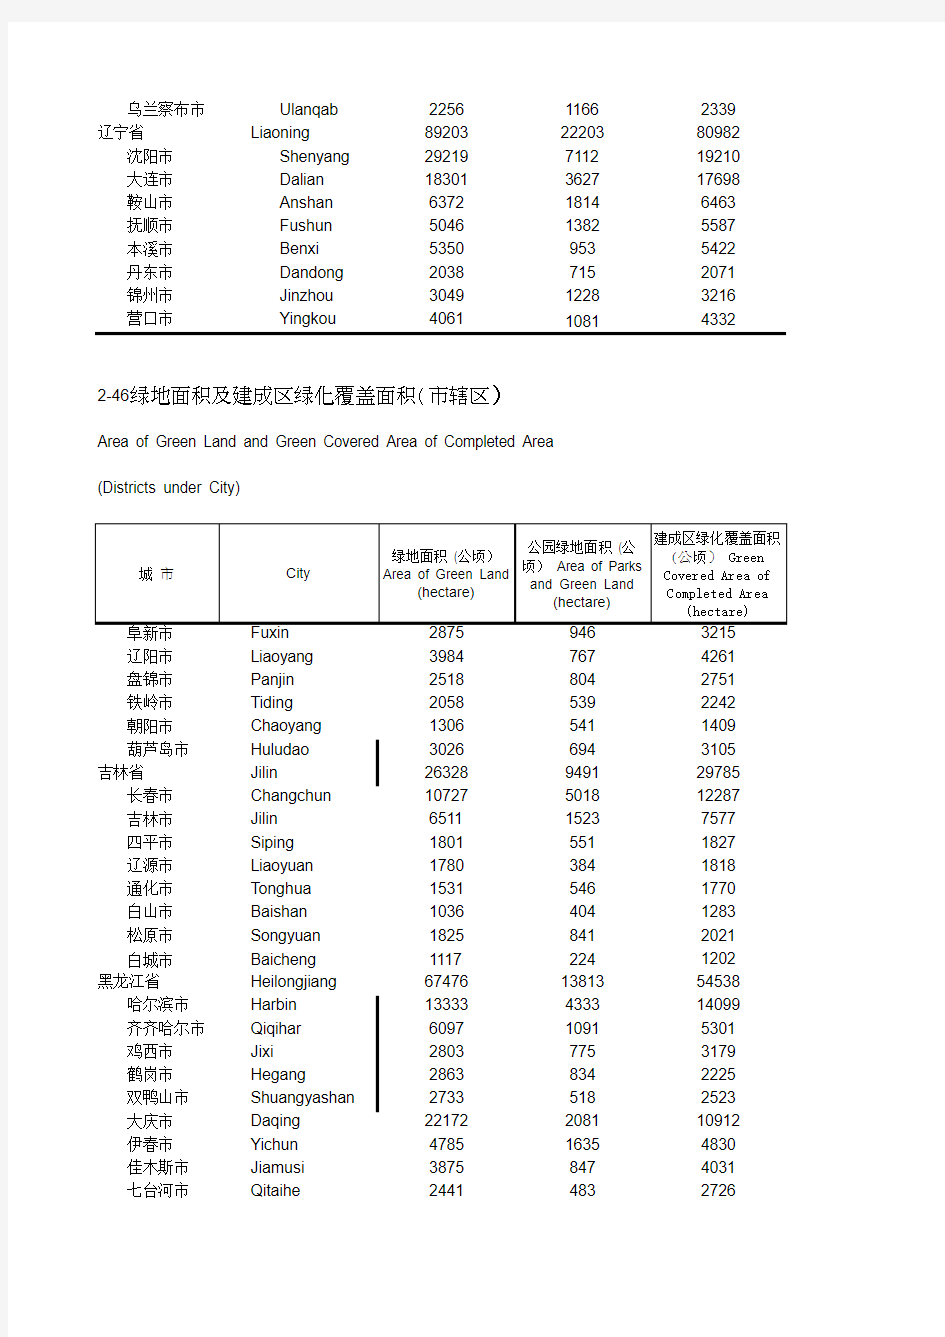 中国城市统计年鉴2014 绿地面积及建成区绿化覆盖面积(市辖区)